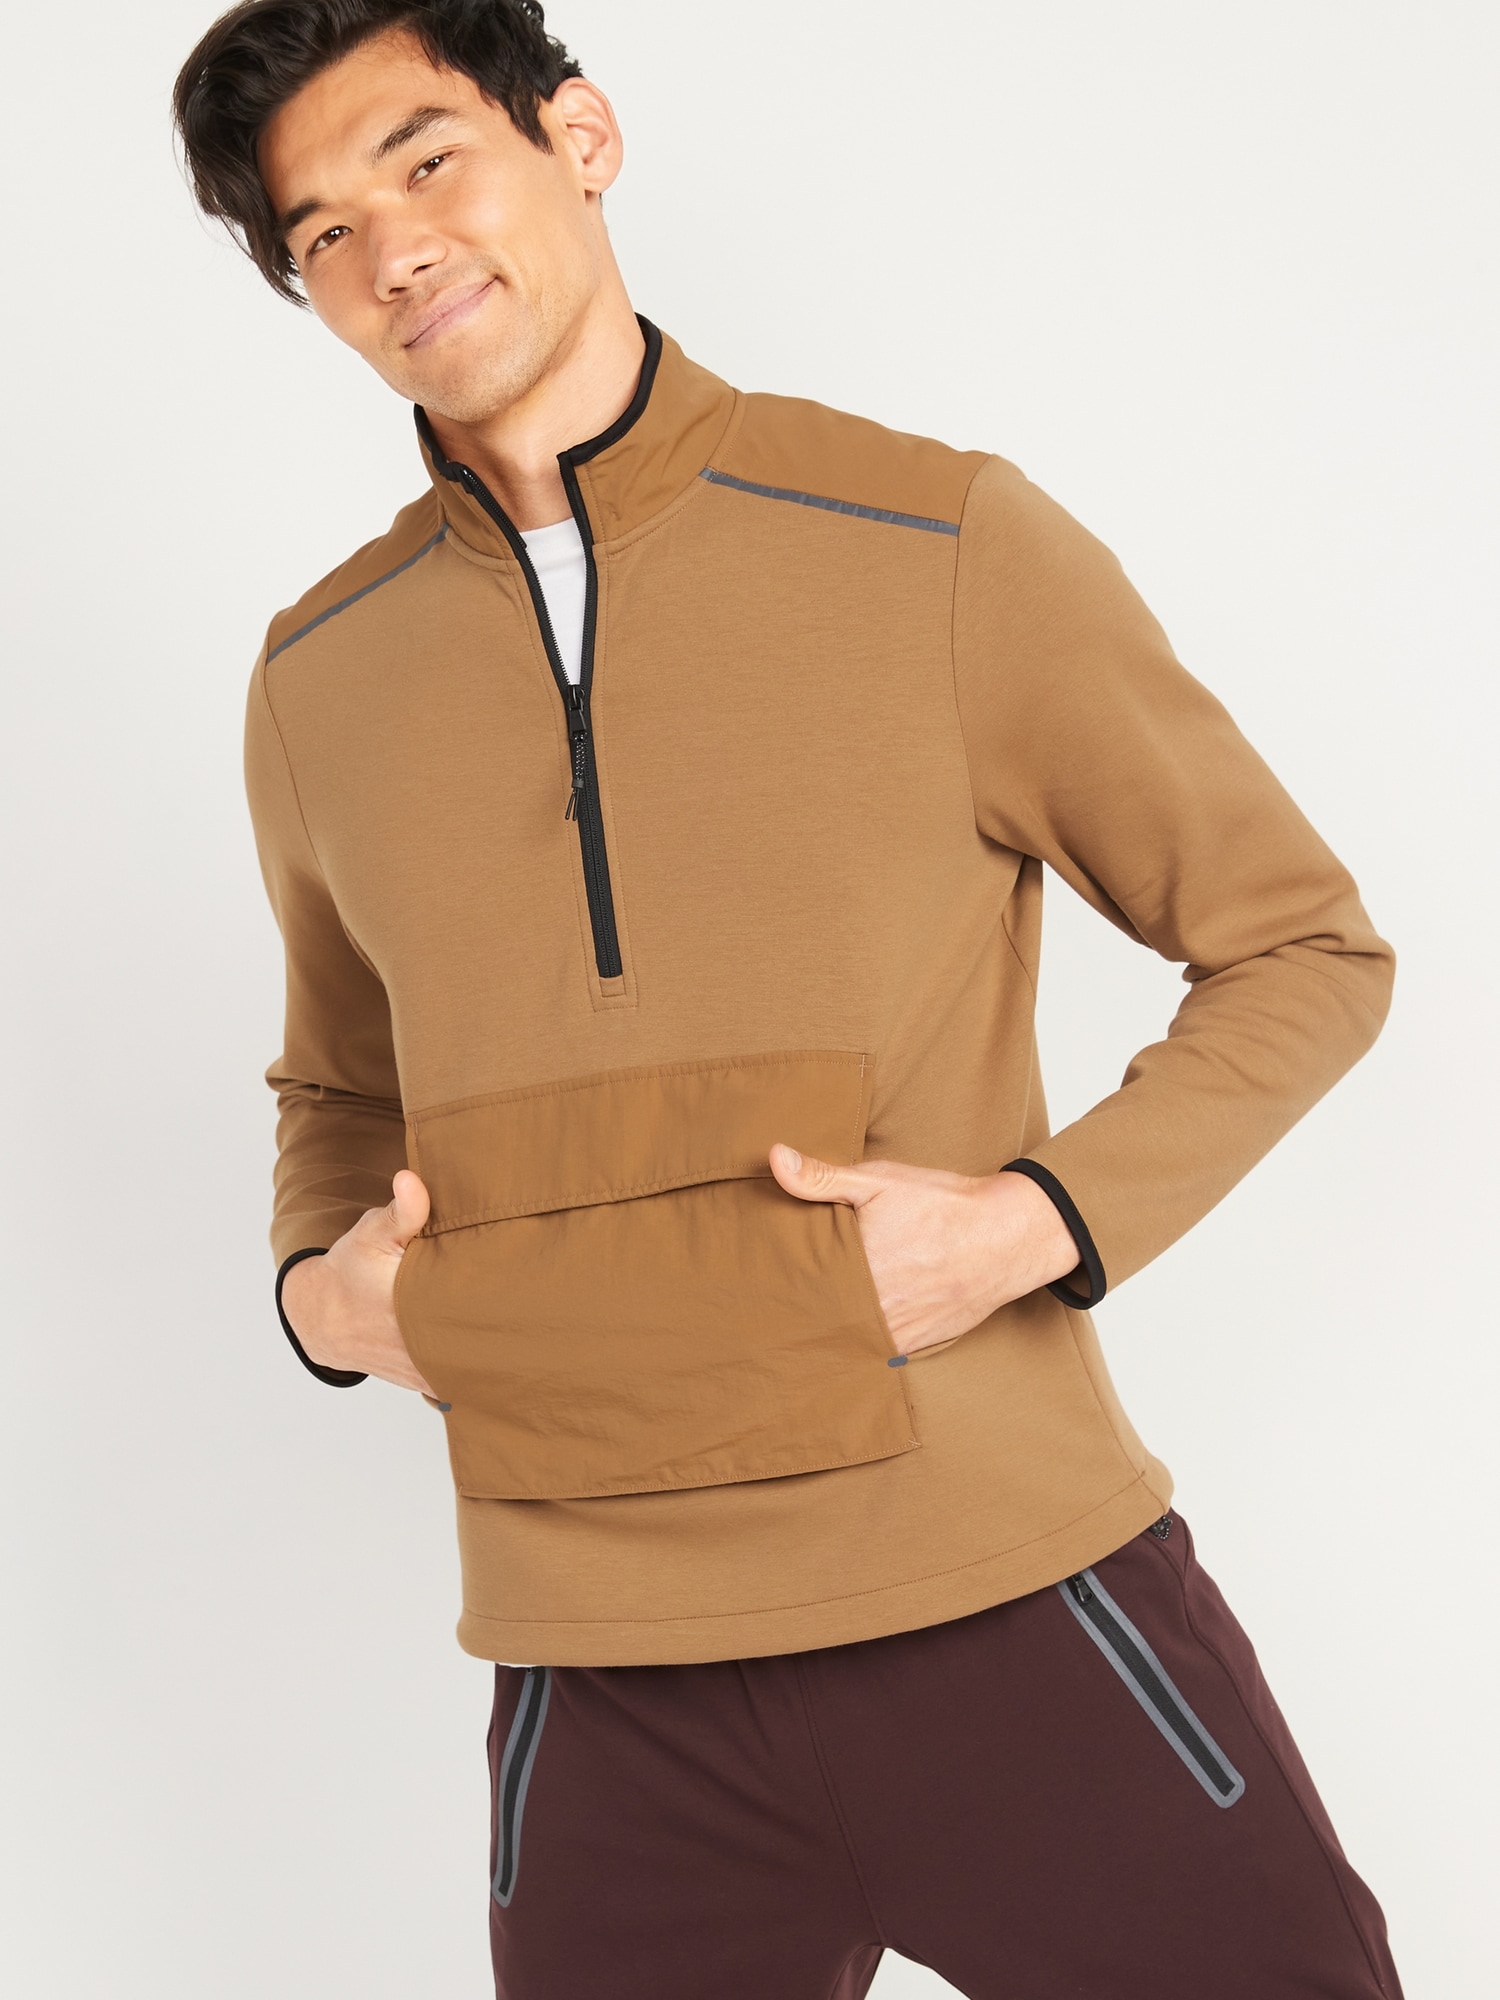 Old Navy Dynamic Fleece Hybrid Half-Zip Mock-Neck Sweatshirt for Men brown. 1